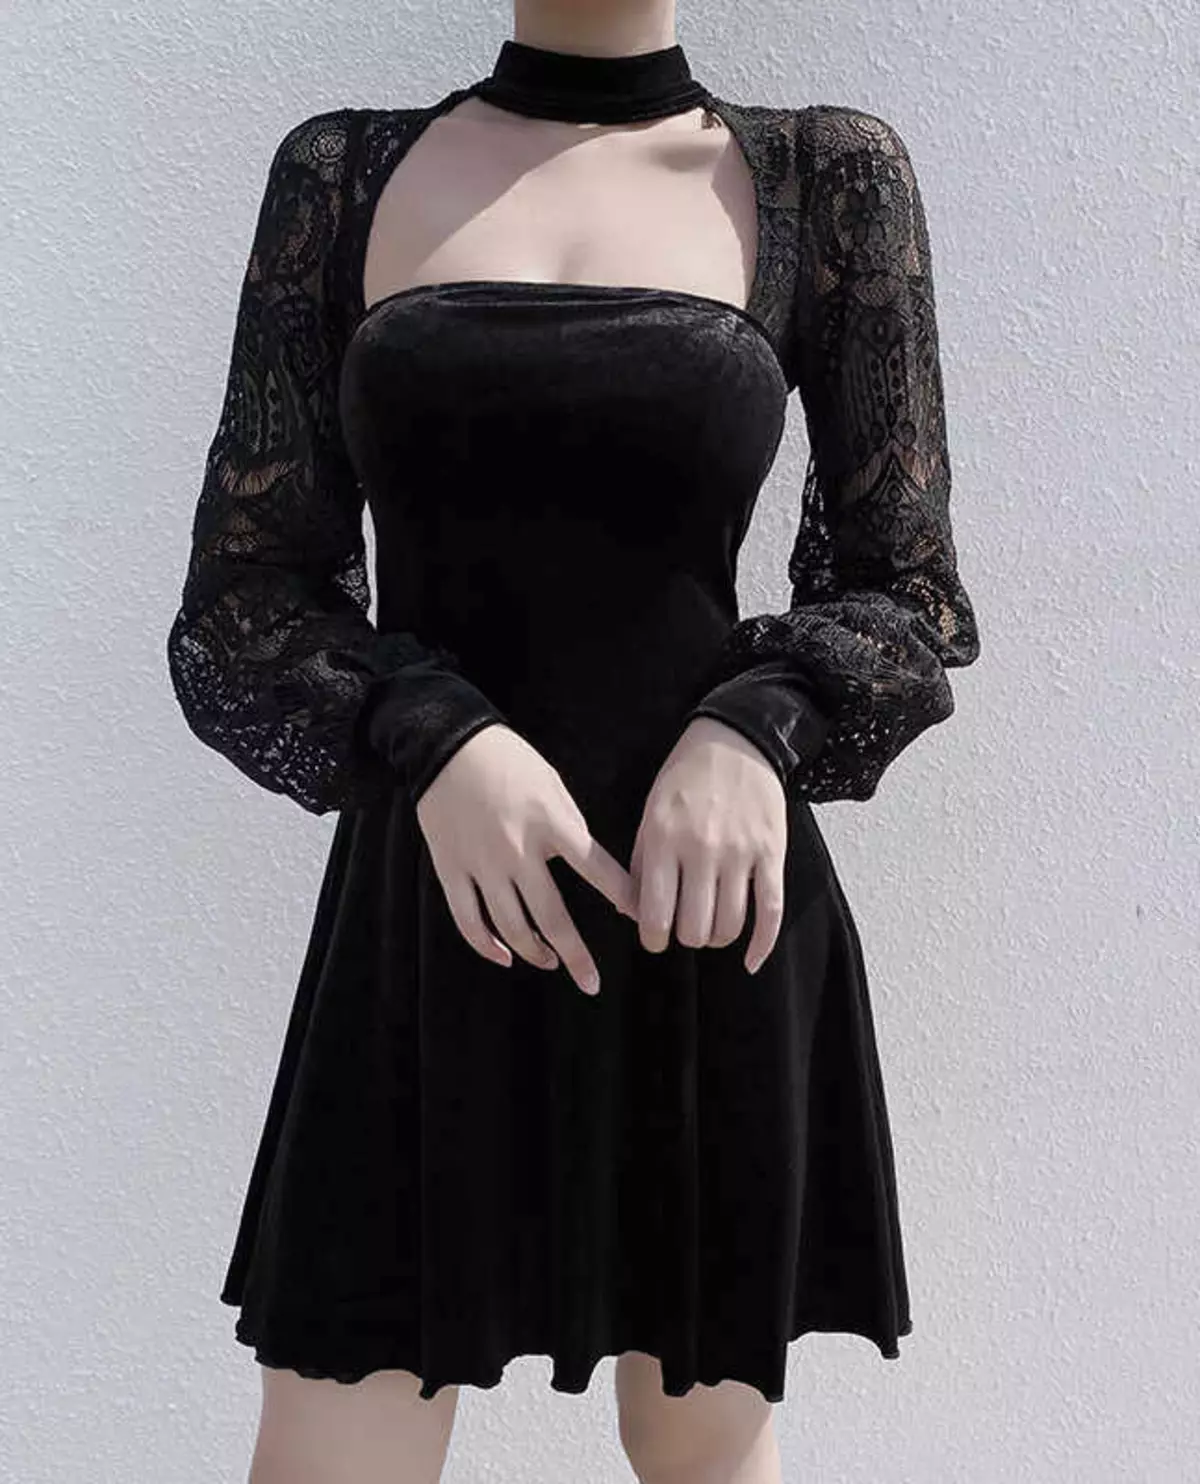 Gooti kleidid: Lolita stiilis, mustad pulmakleidid ja lühikese korsetiga lõpetamisel. Ilus näited õhtuse varustus 819_3